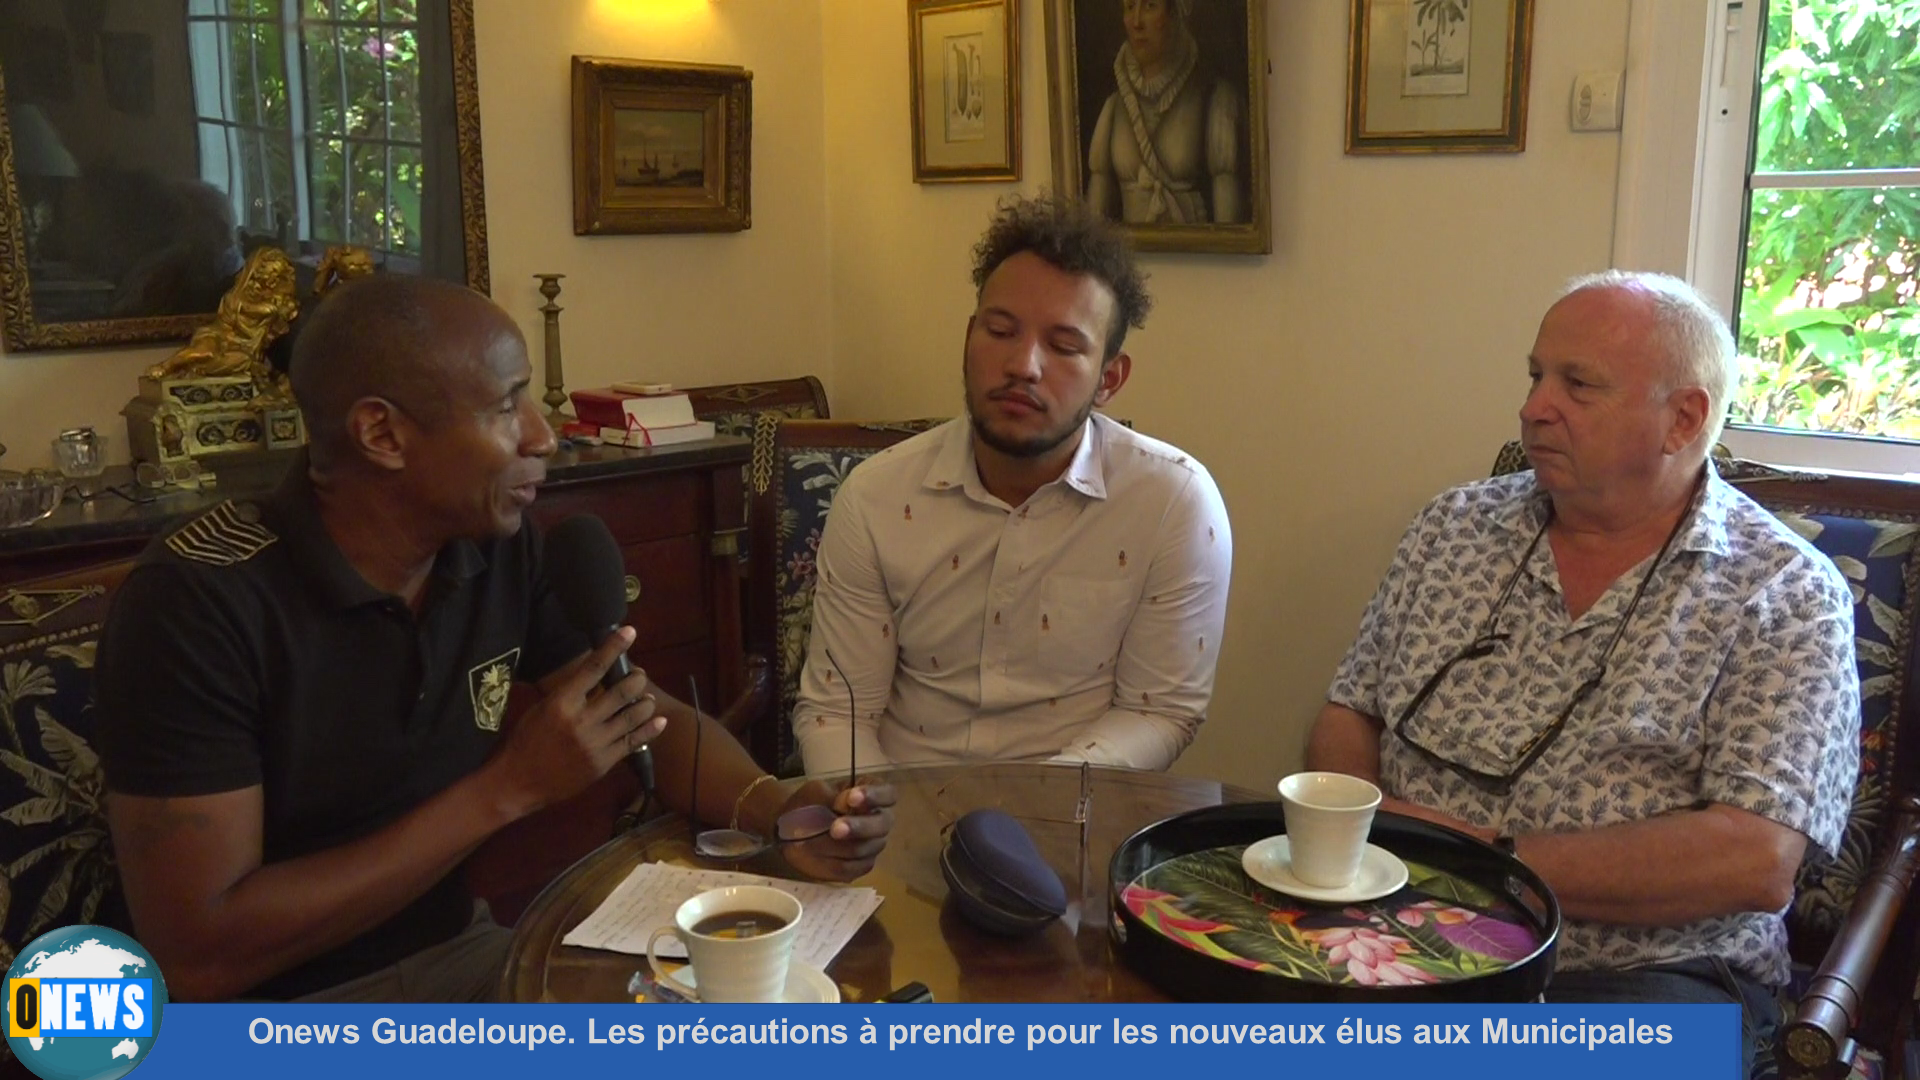 [Vidéo] Onews Guadeloupe. Les précautions à prendre pour les nouveaux élus aux Municipales